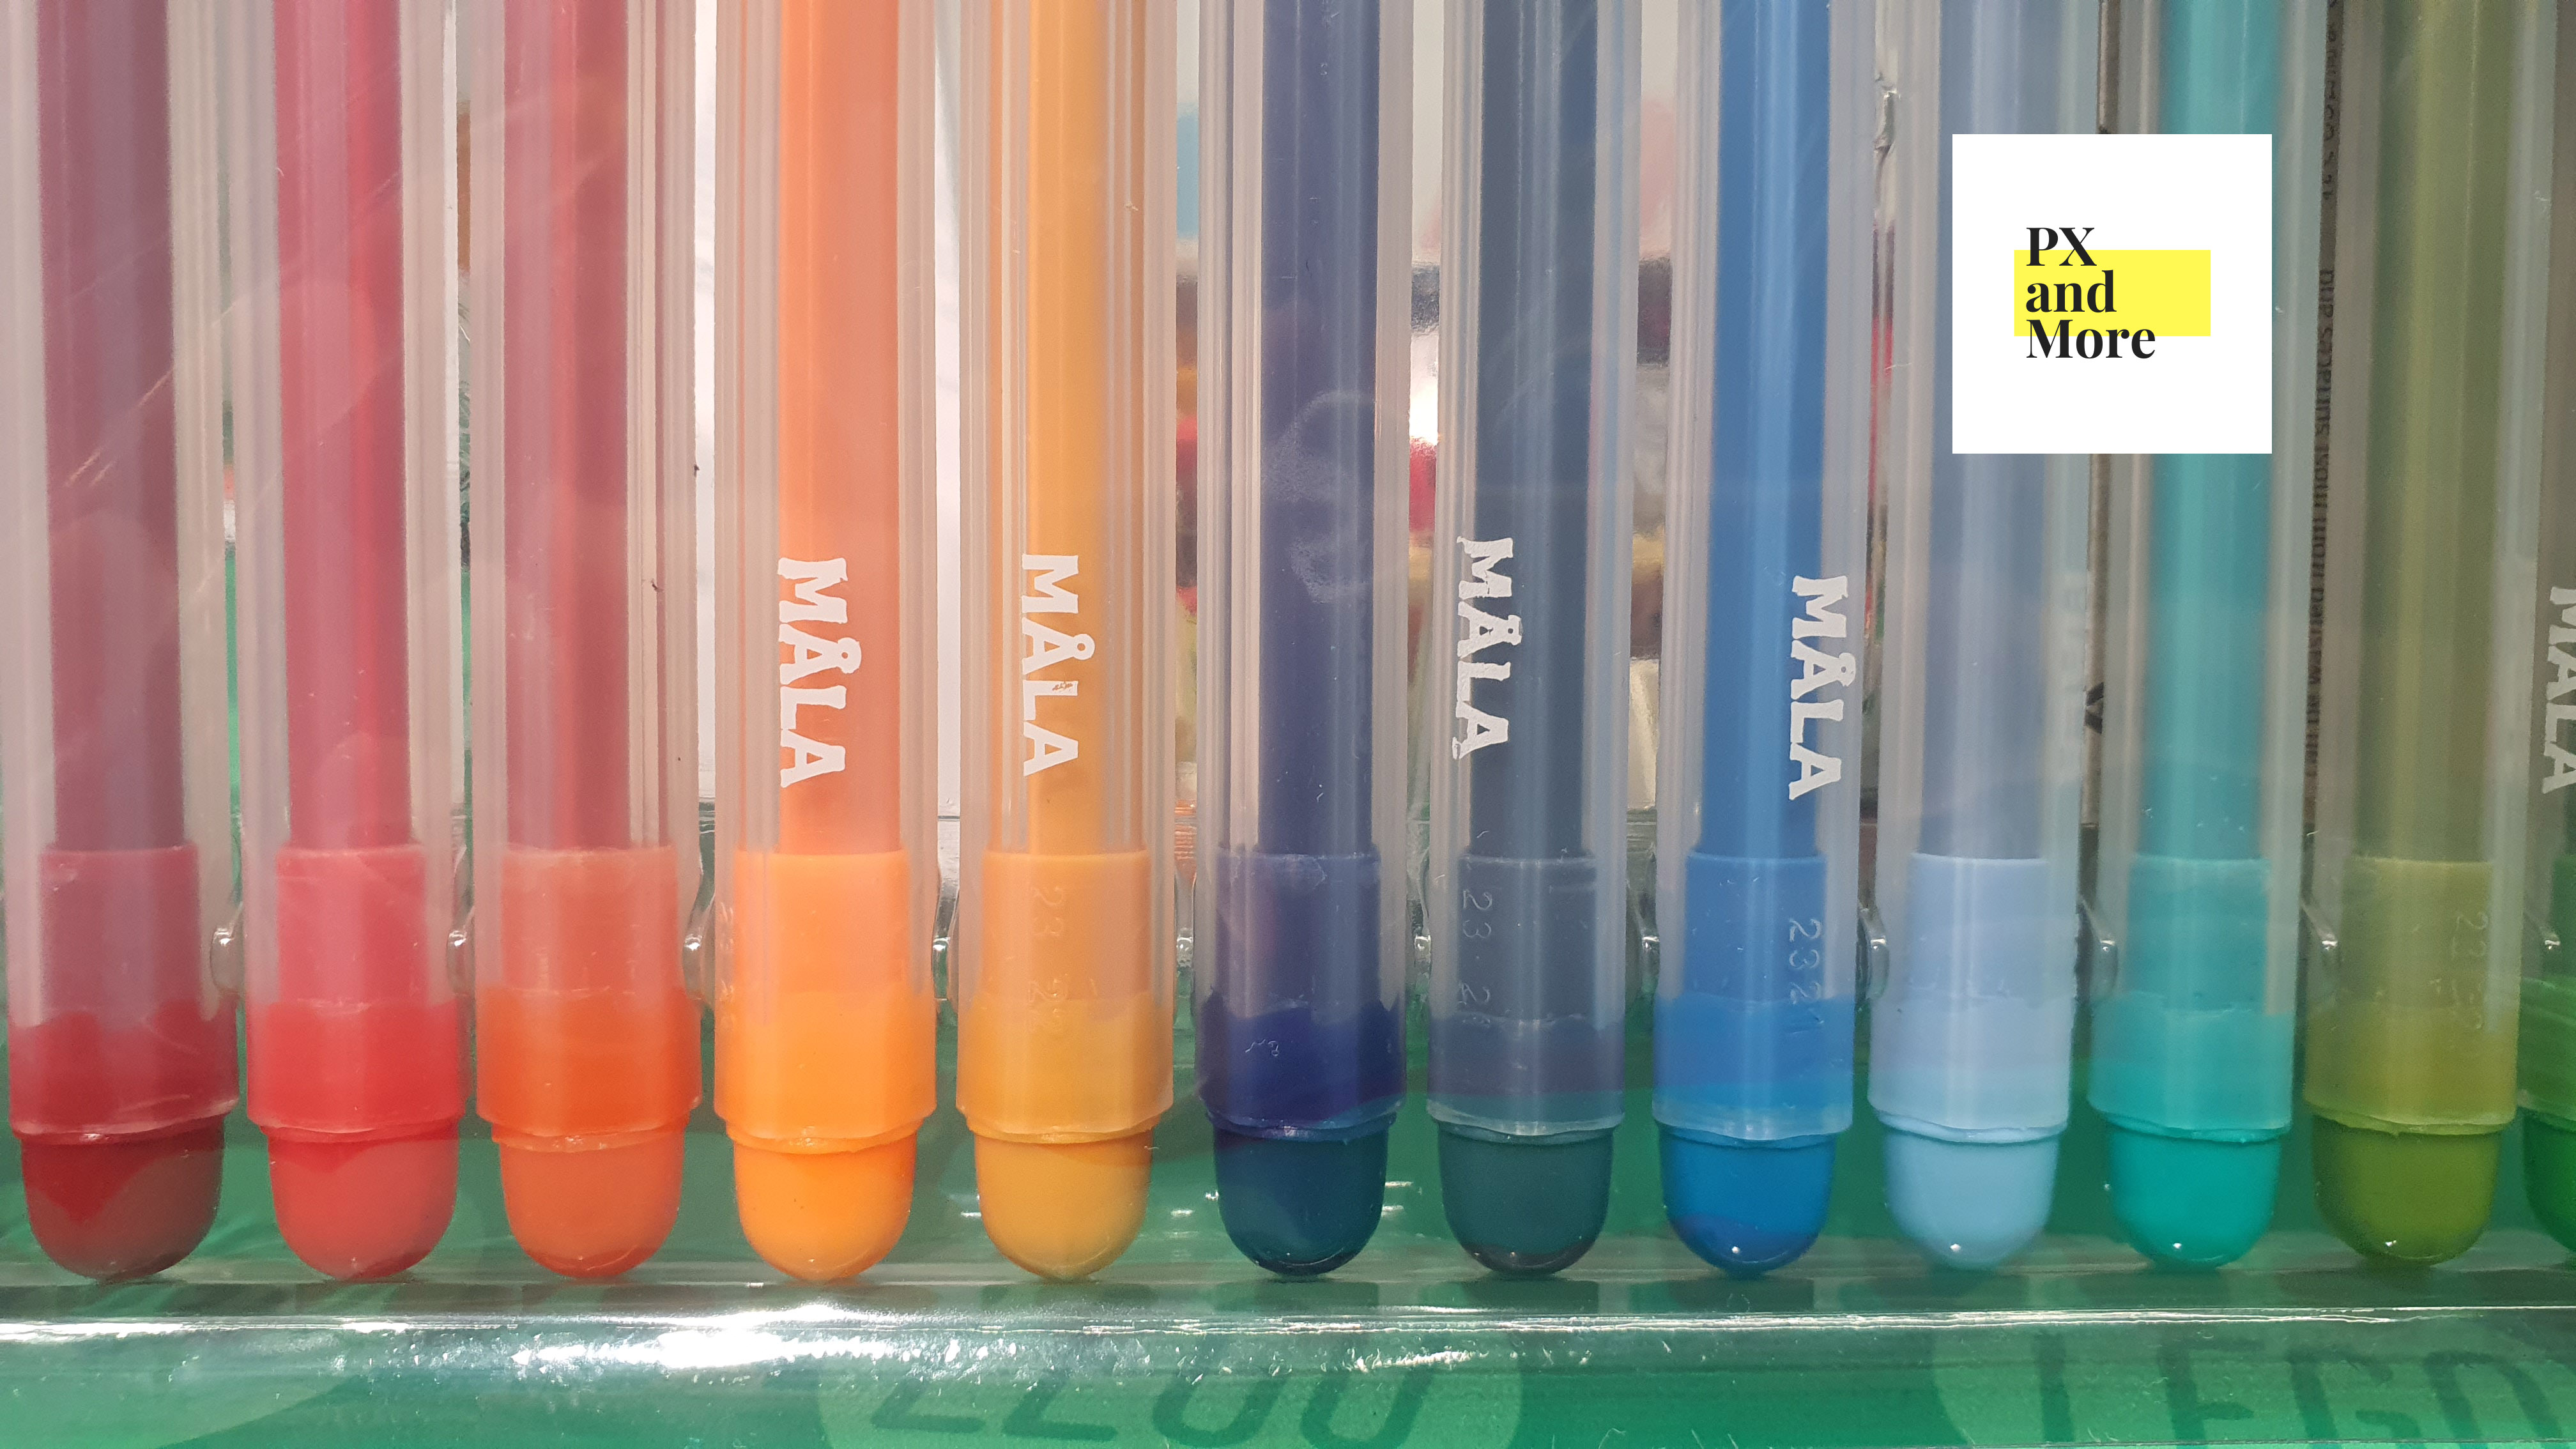 MÅLA Felt-tip pen, mixed colors assorted colors - IKEA